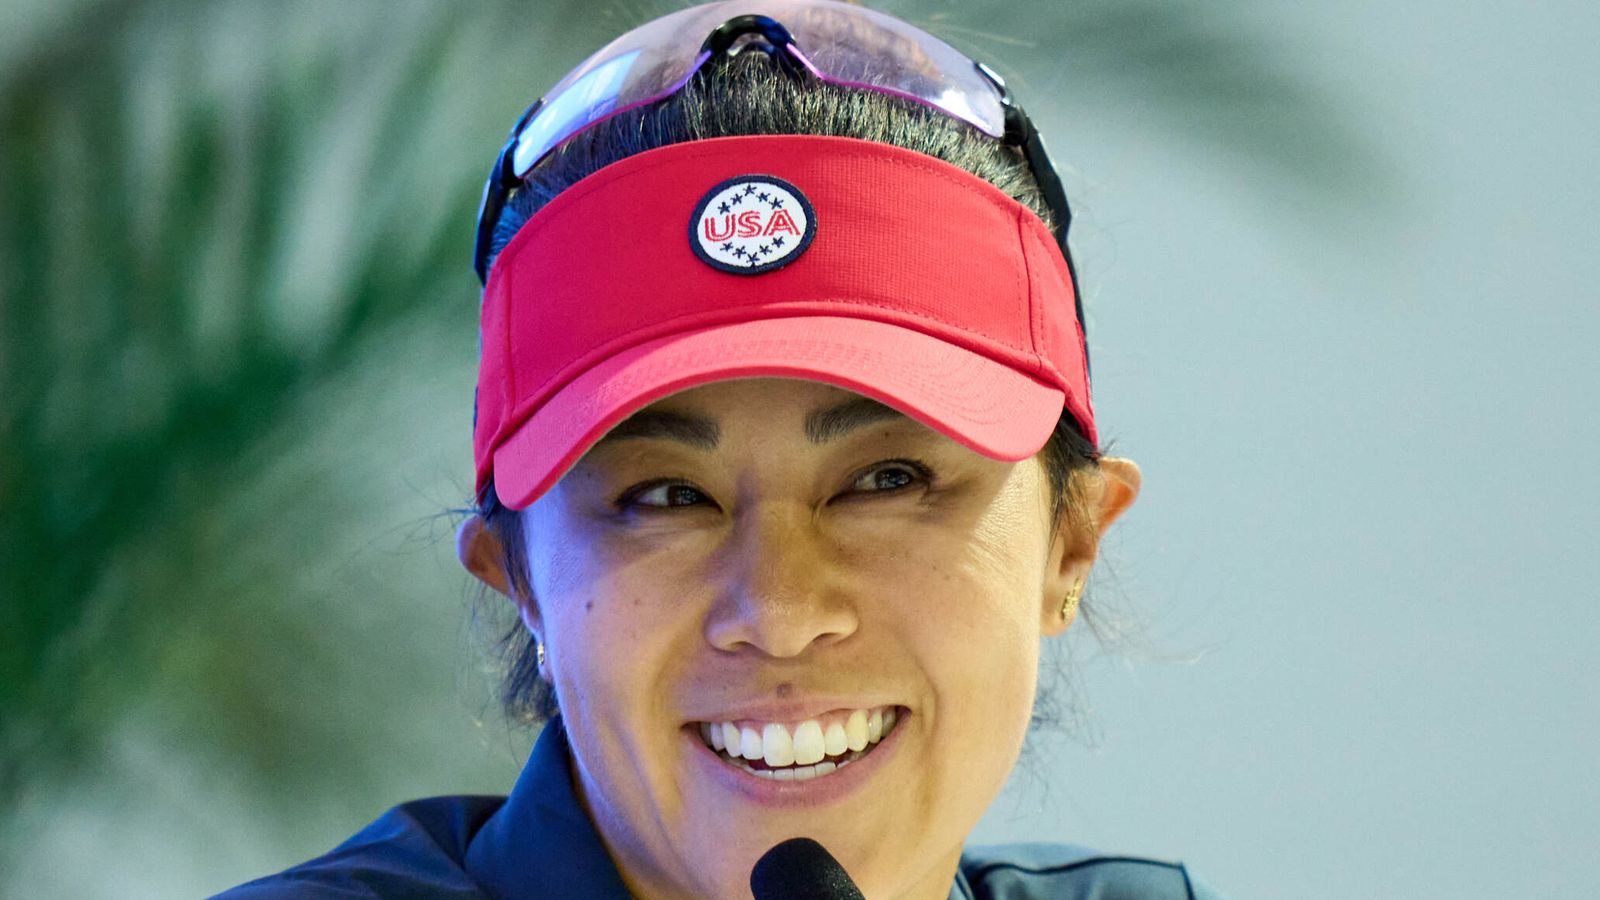 Piala Solheim: Danielle Kang dari AS tentang kesiapan ‘dramatis’ saat klub-klub menghilang dalam perjalanan mereka ke Spanyol |  Berita Golf